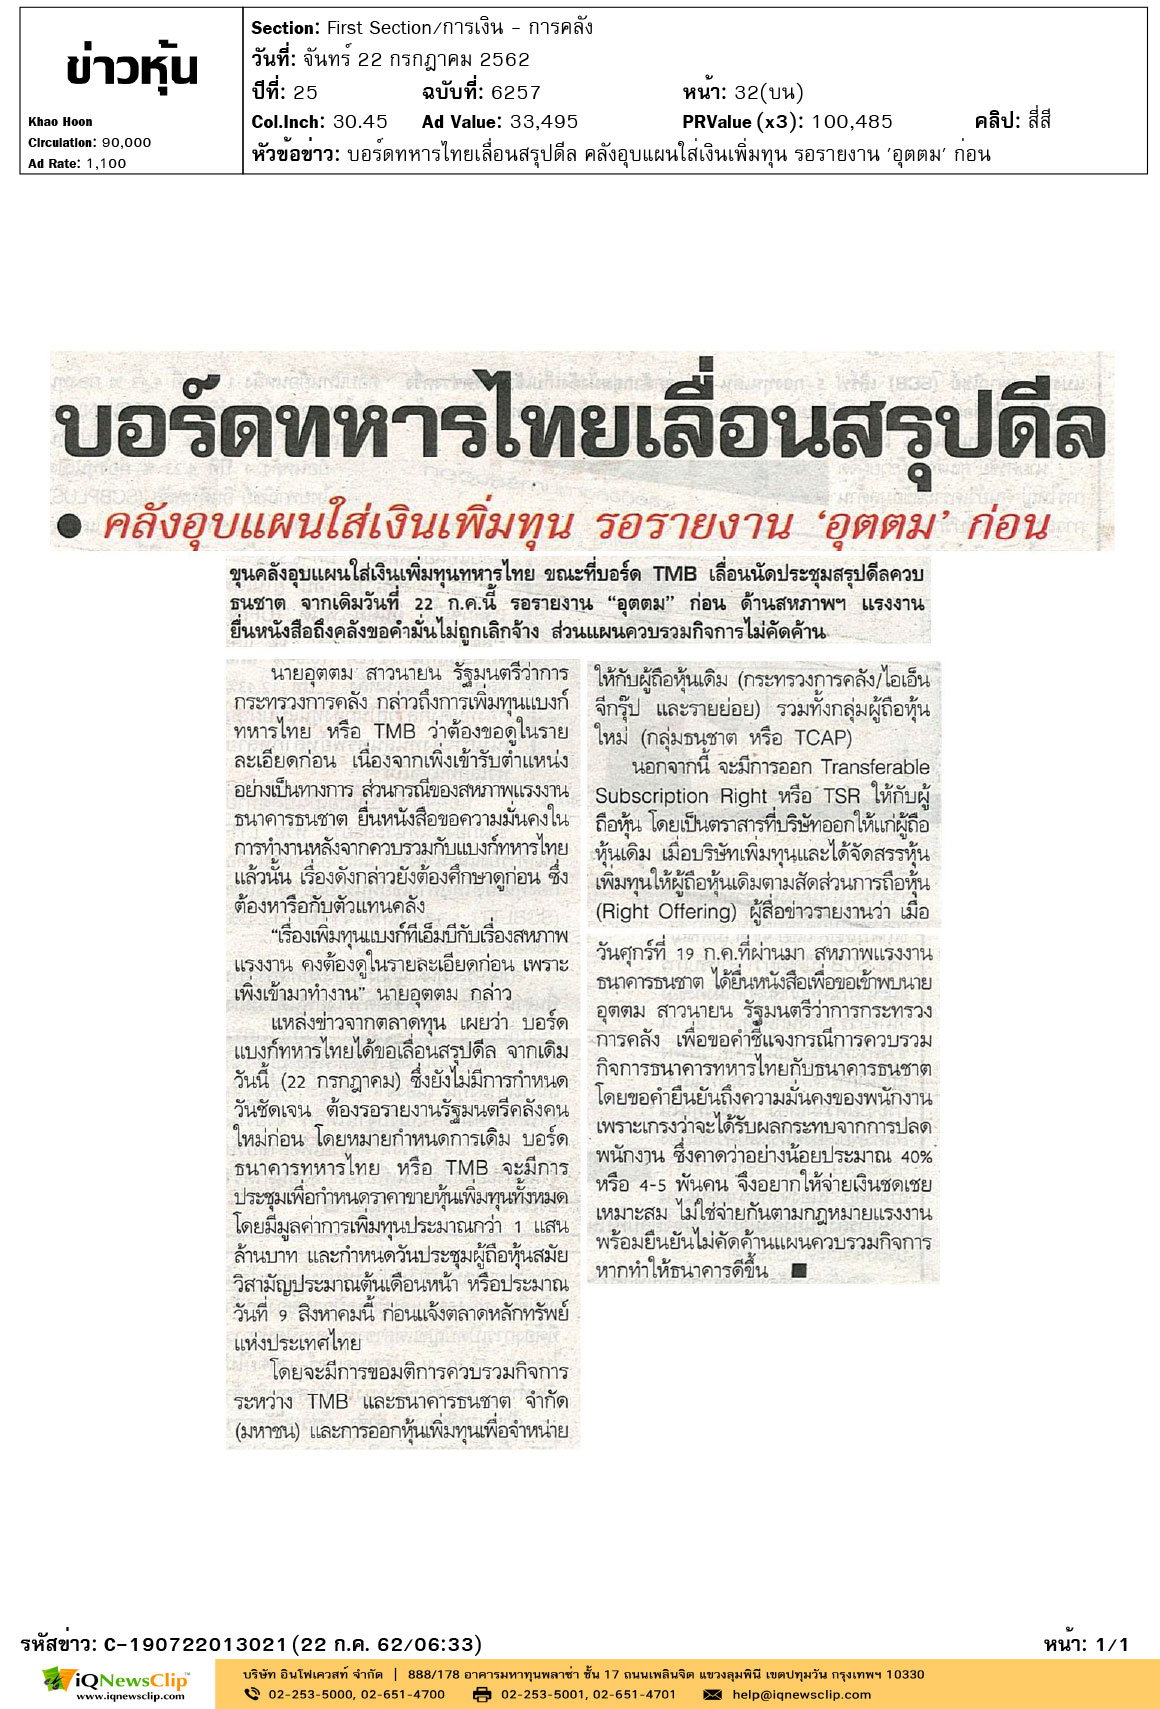 +ข่าวหุ้น---บอร์ดทหารไทยเลื่อนสรุปดีล-คลังอุบแผนใส่เงินเพิ่มทุน-รอรายงาน..